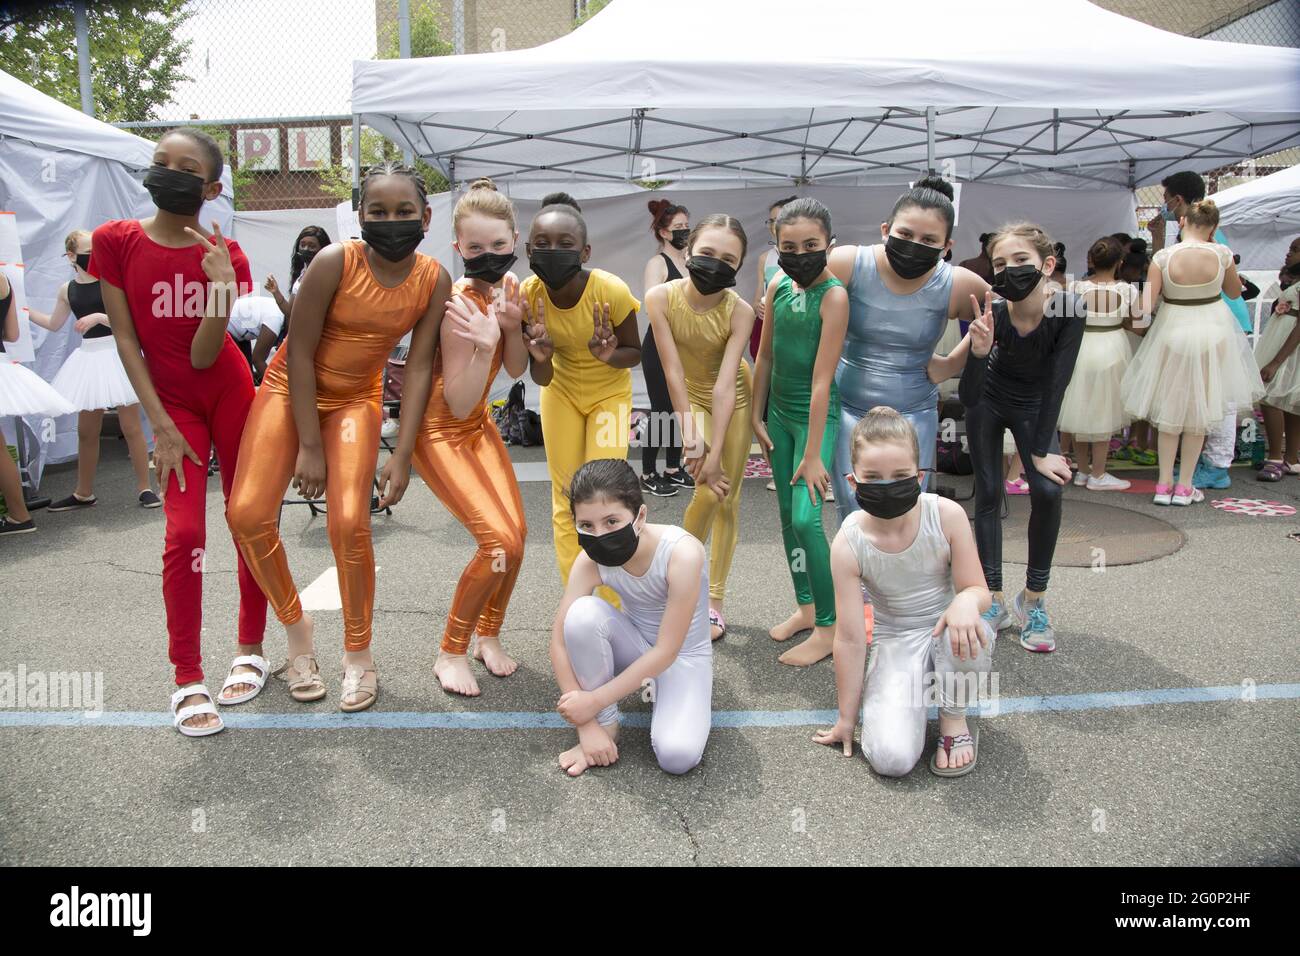 Das Cynthia King Dance Studio für Kinder in Brooklyn, New York, zeigt seine erste Performance im Freien, mit Masken und sozialer Distanzierung im Frühjahr 2021, seit die Pandemie und die Stilllegung der Stadt mehr als ein Jahr zuvor begann. Stockfoto